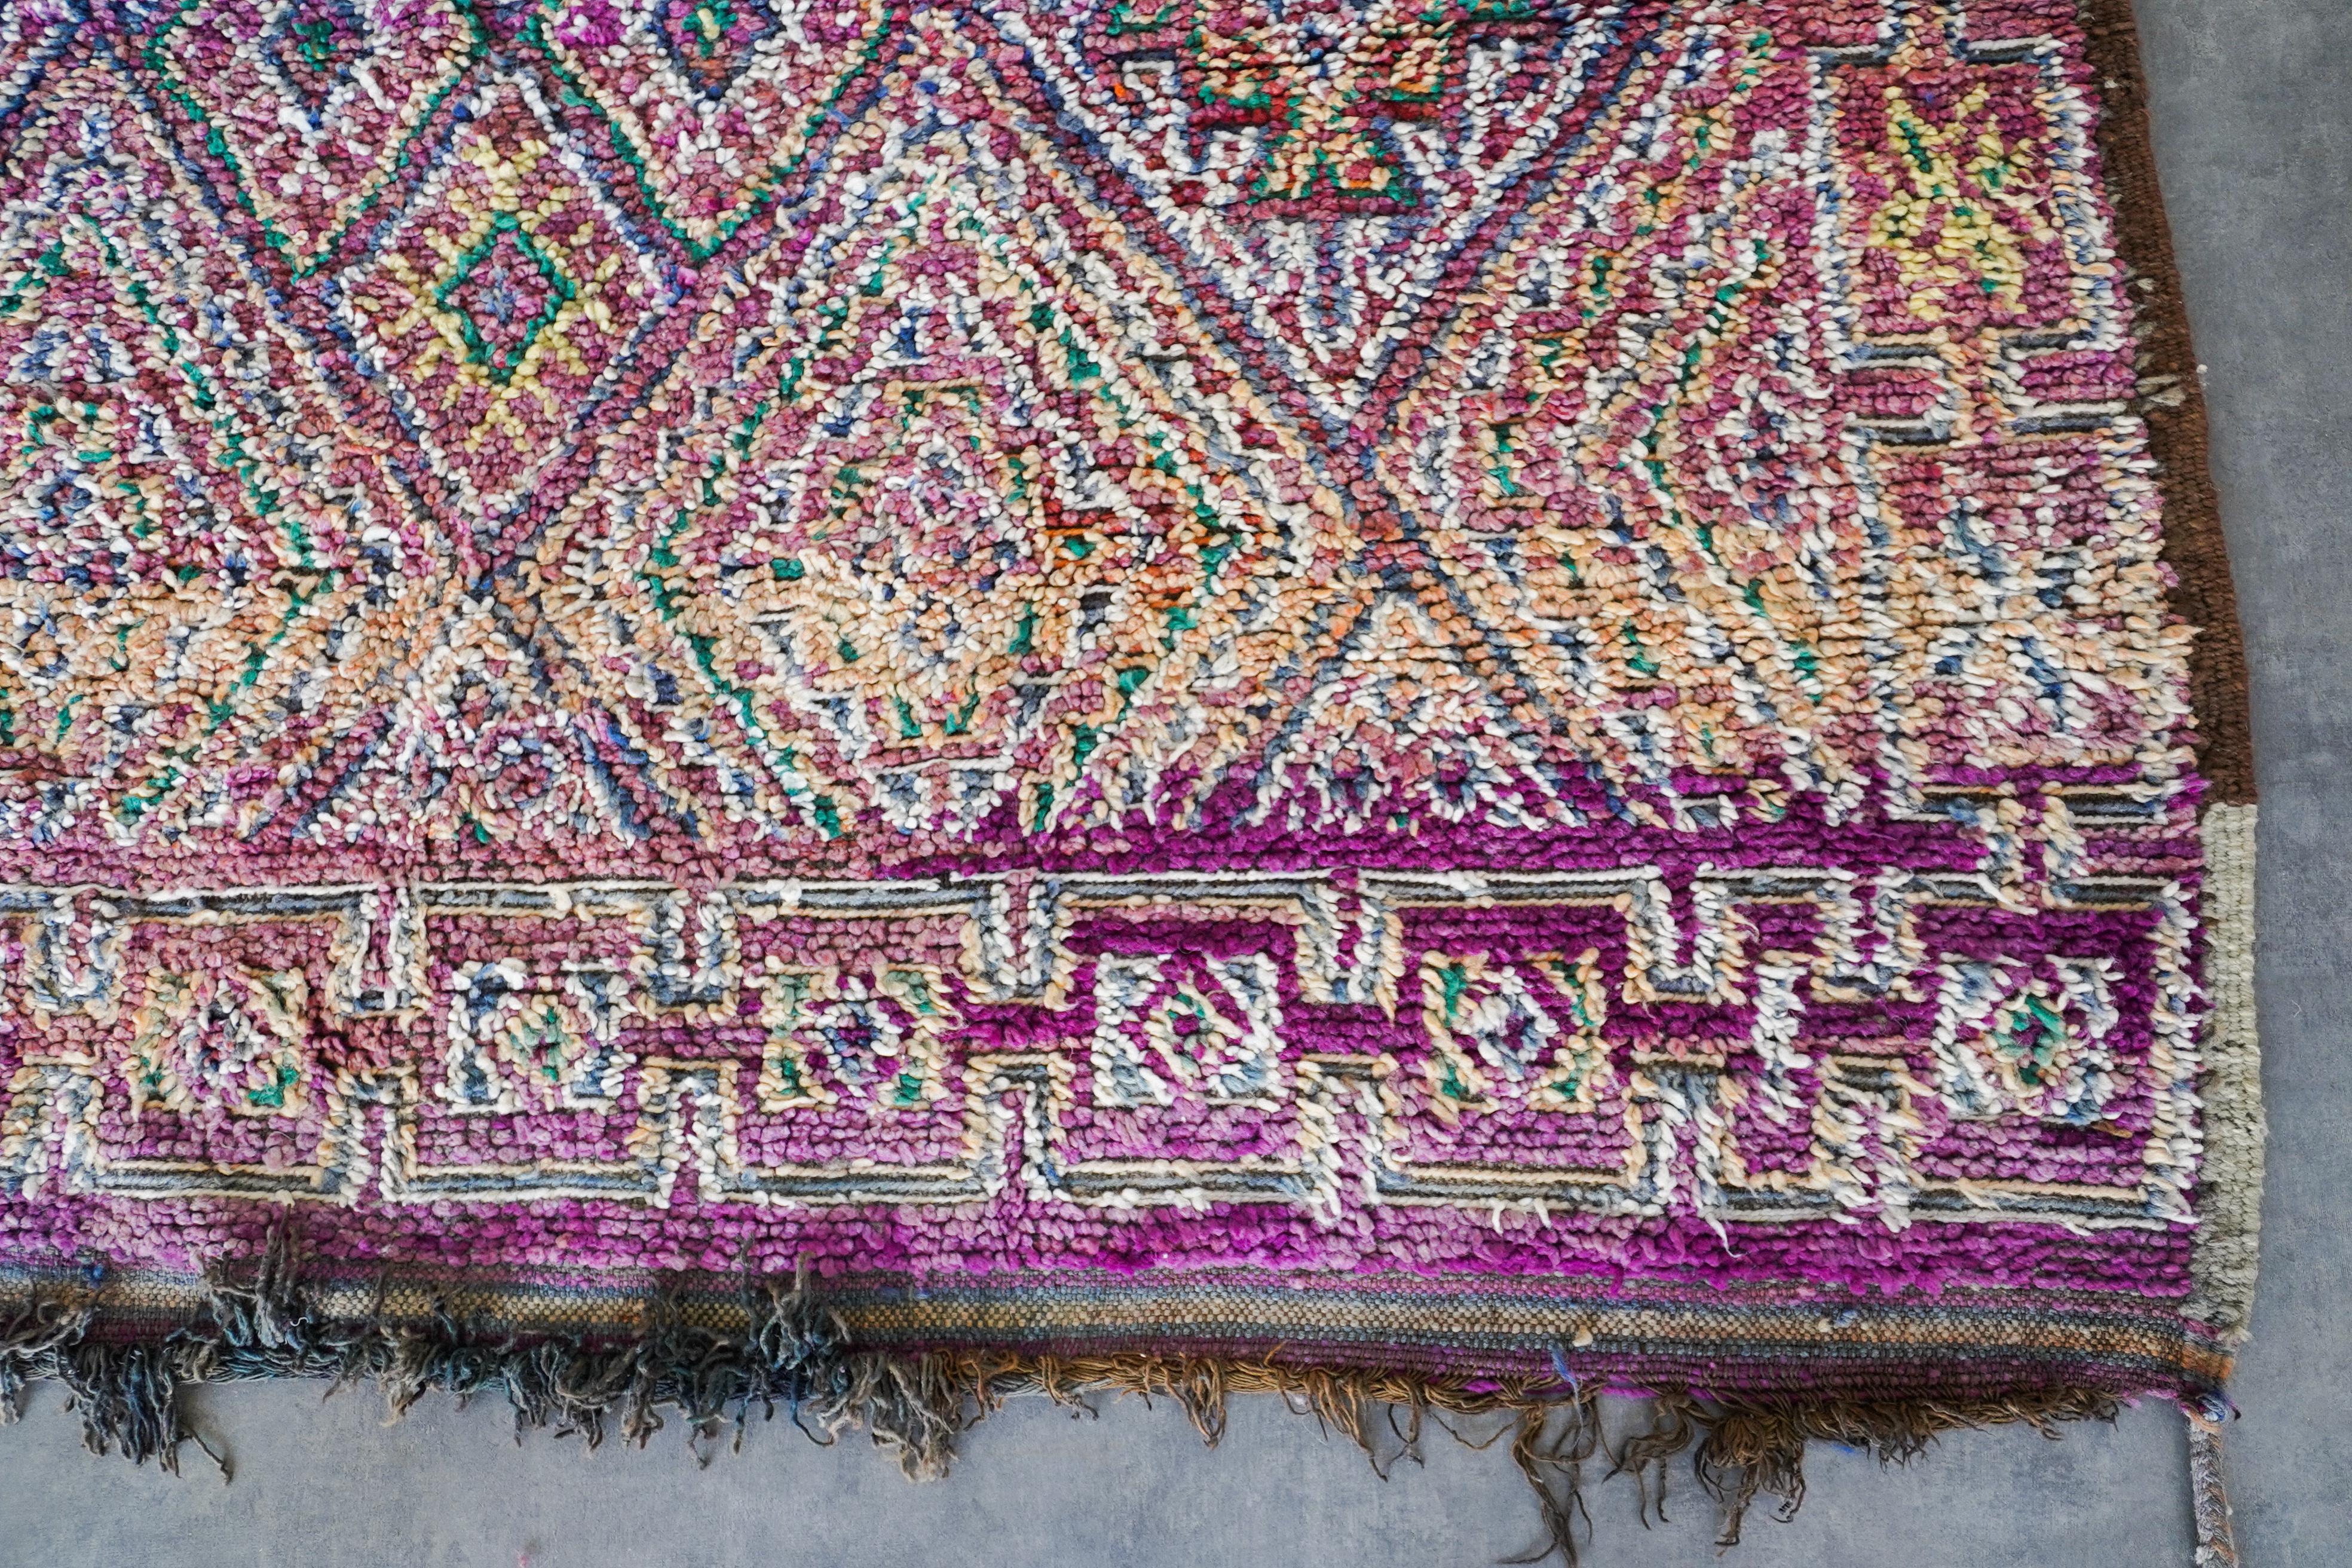 Découvrez le riche héritage tissé dans notre tapis vintage marocain Purple. Fabriqué à la main par des artisans qualifiés selon des techniques éprouvées, chaque tapis berbère est un récit unique qui fait écho à la tapisserie culturelle du Maroc.